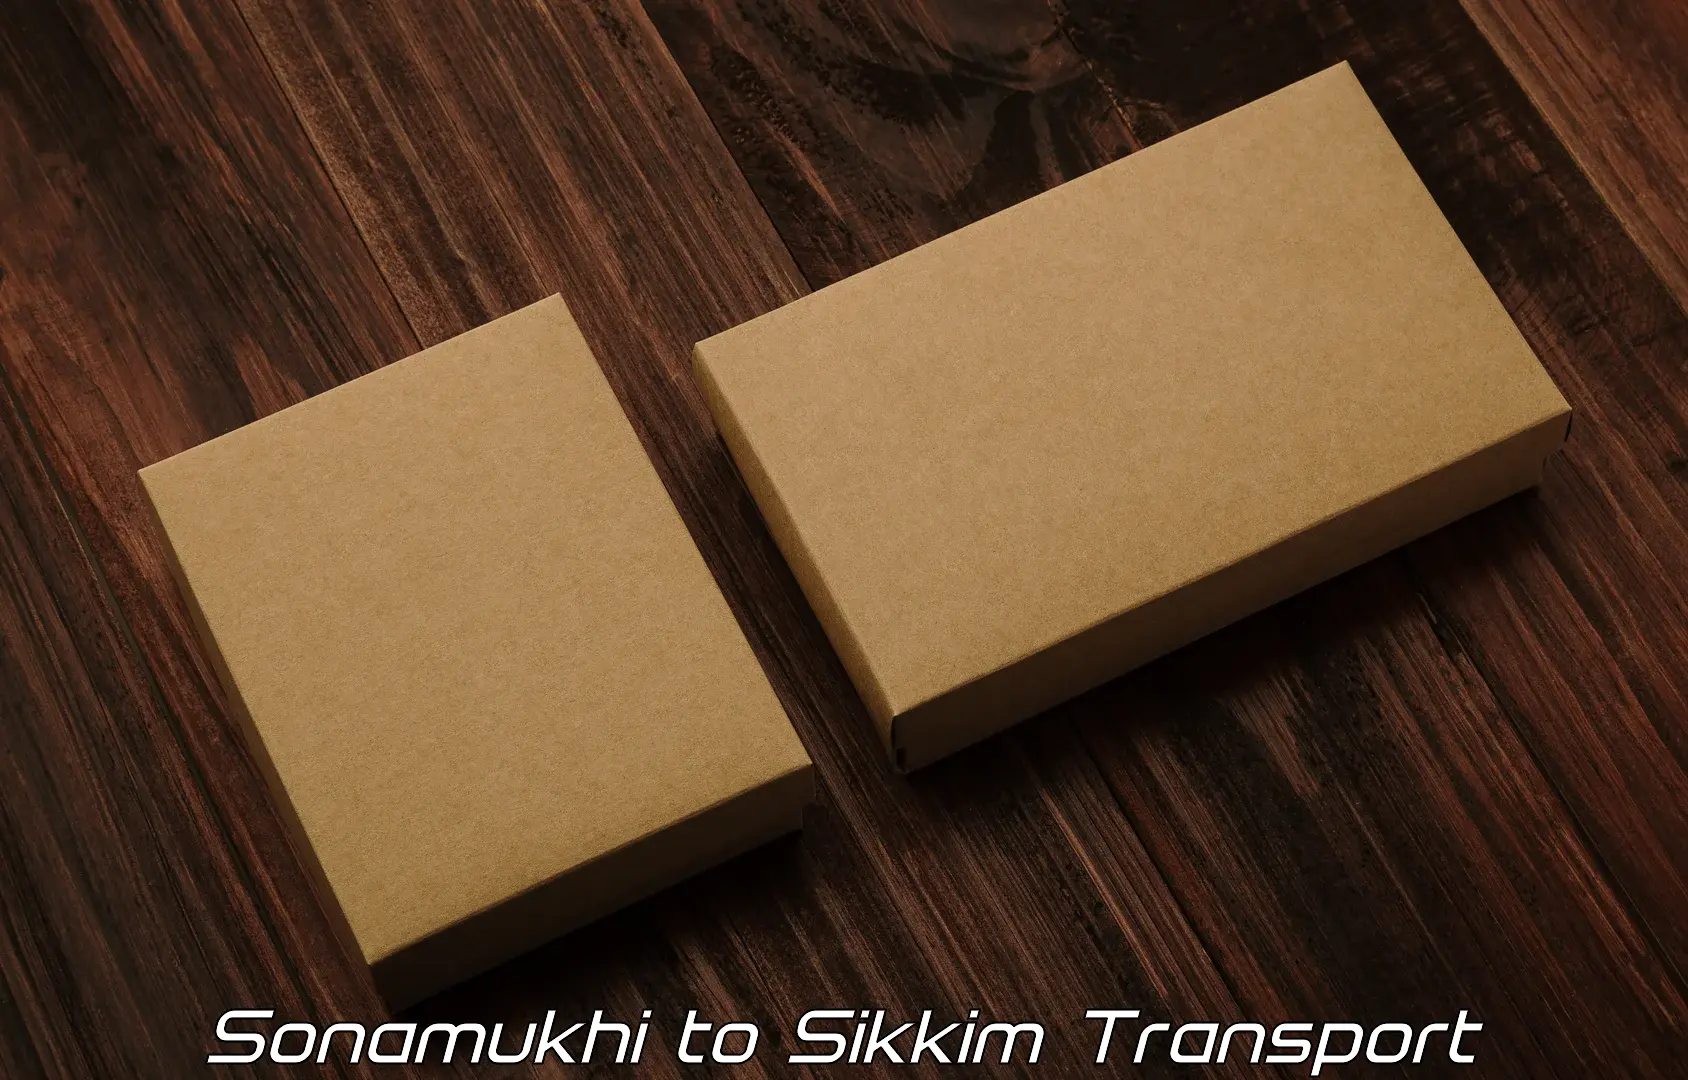 Transport shared services Sonamukhi to Geyzing